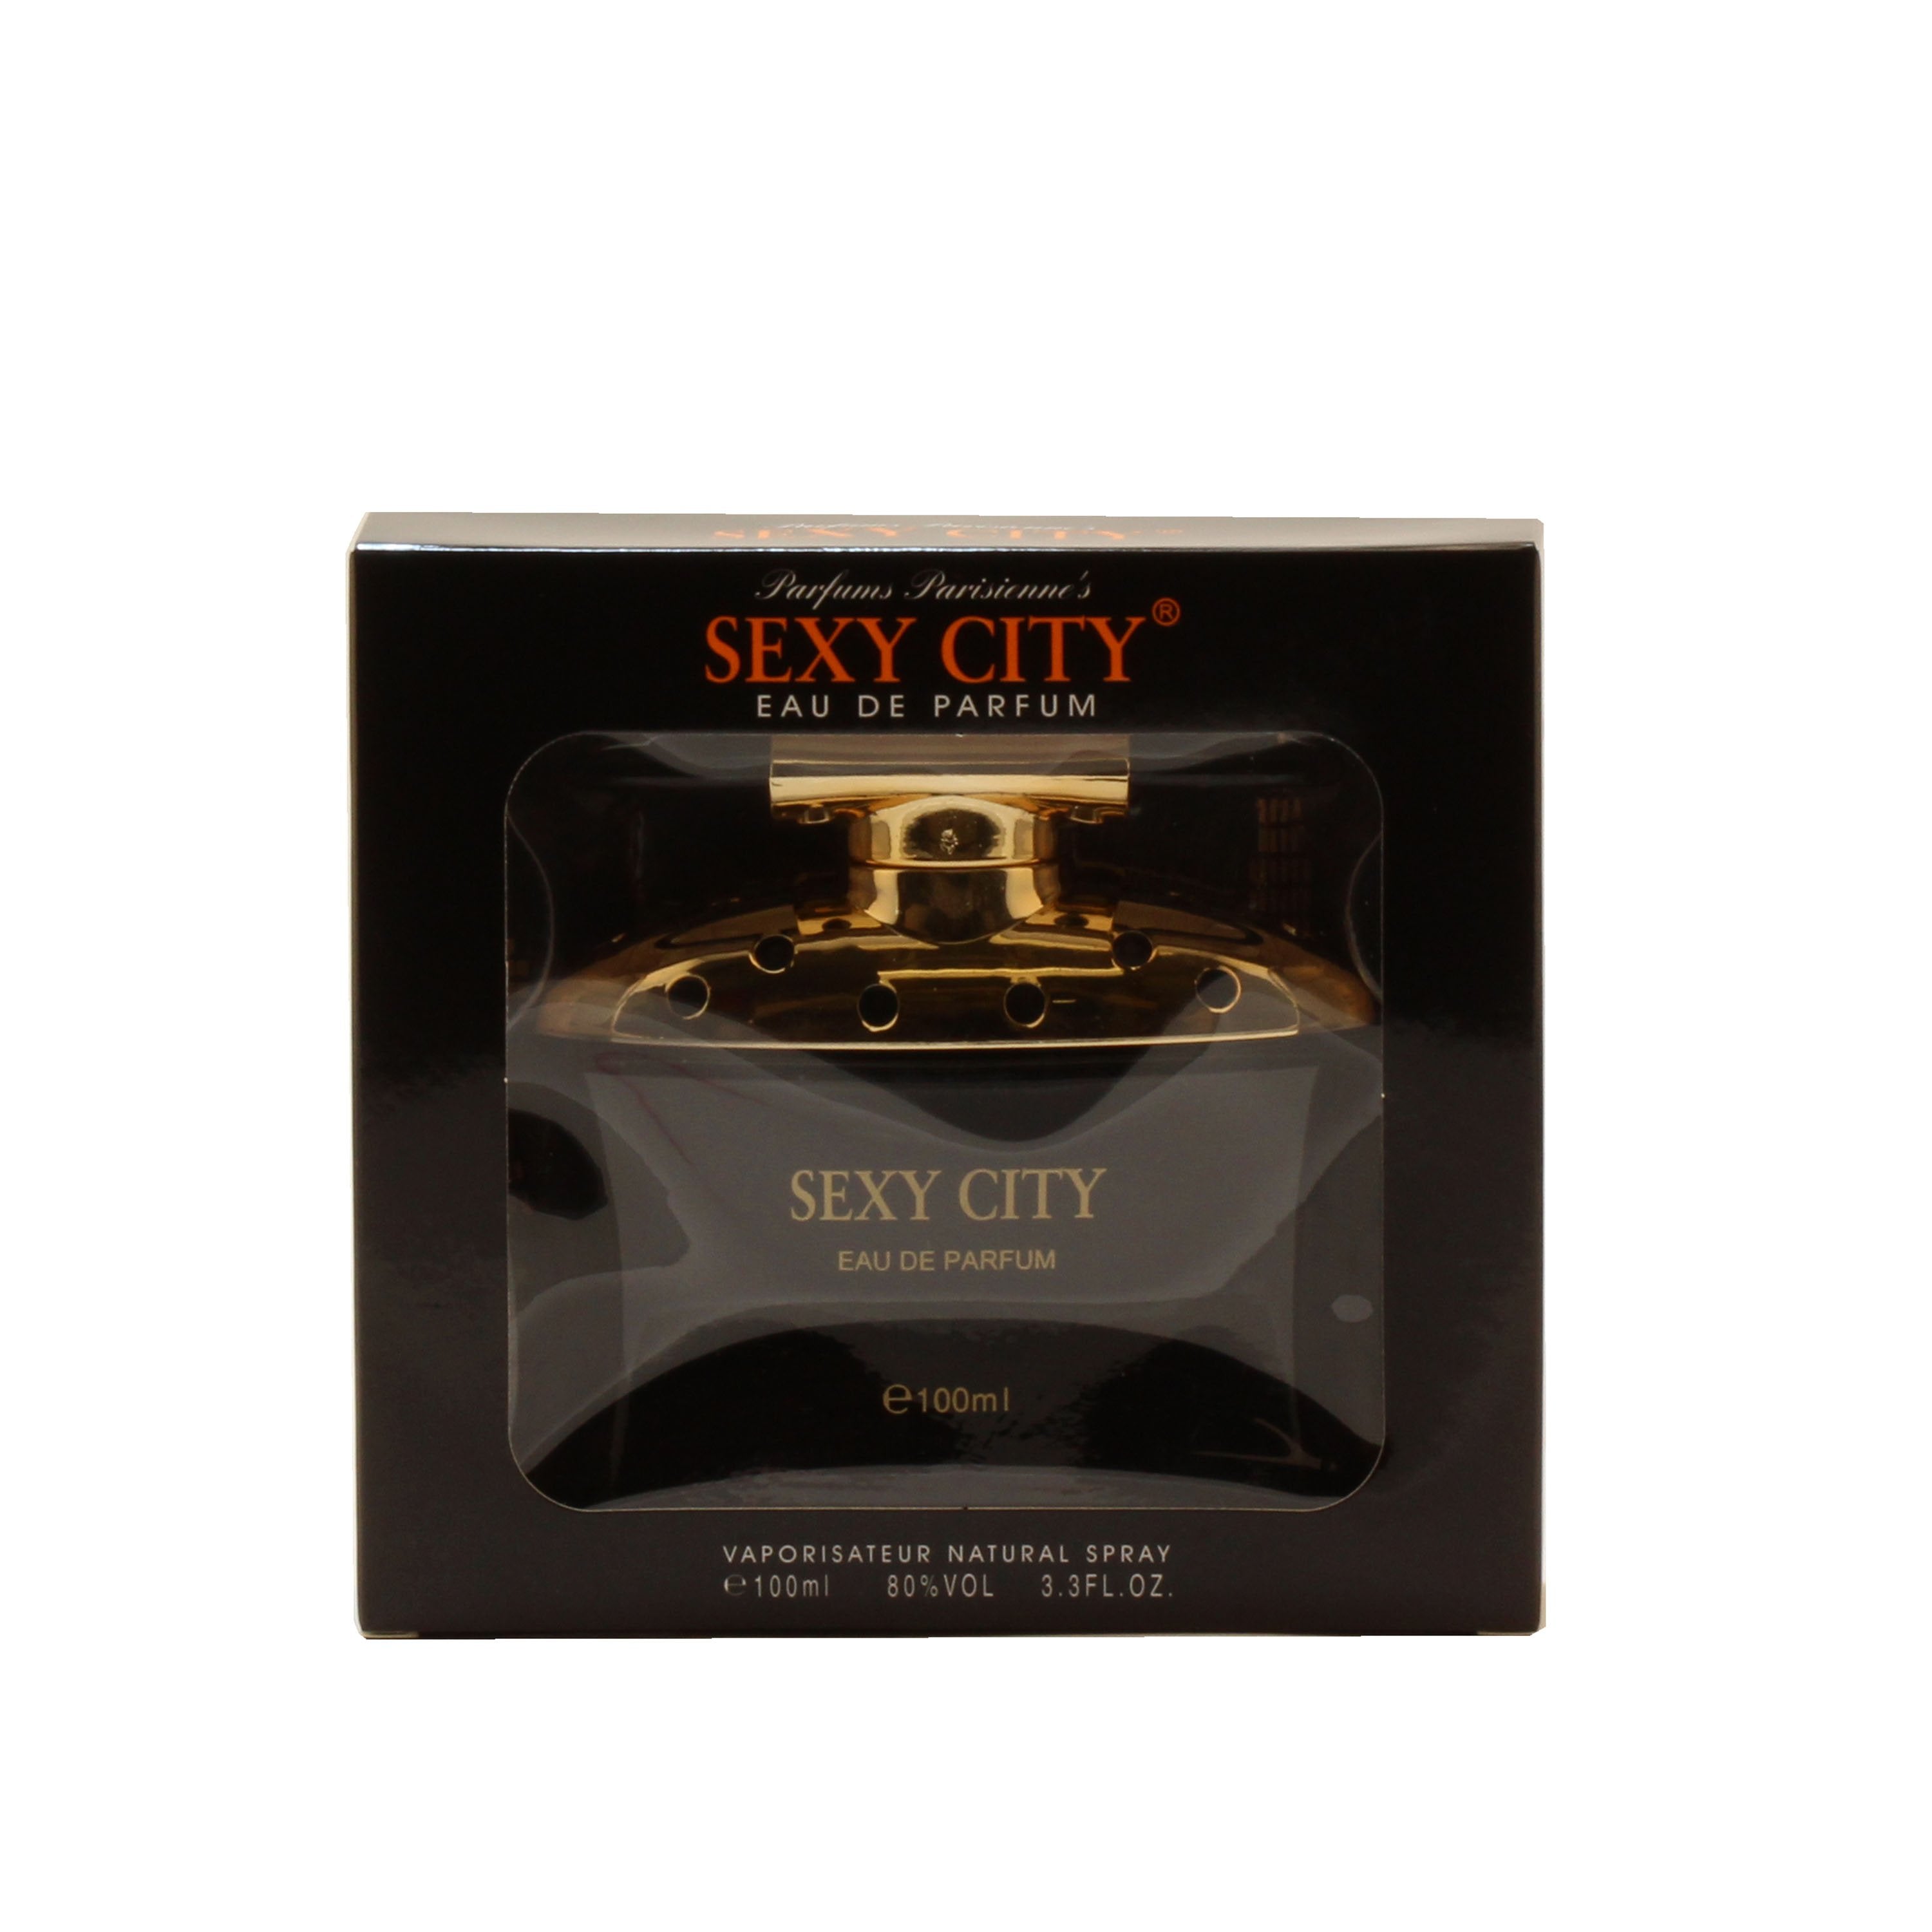 Perfume - SEXY CITY FUSION FOR WOMEN BY PARFUMS PARISIENNE - EAU DE PARFUM SPRAY, 3.4 OZ